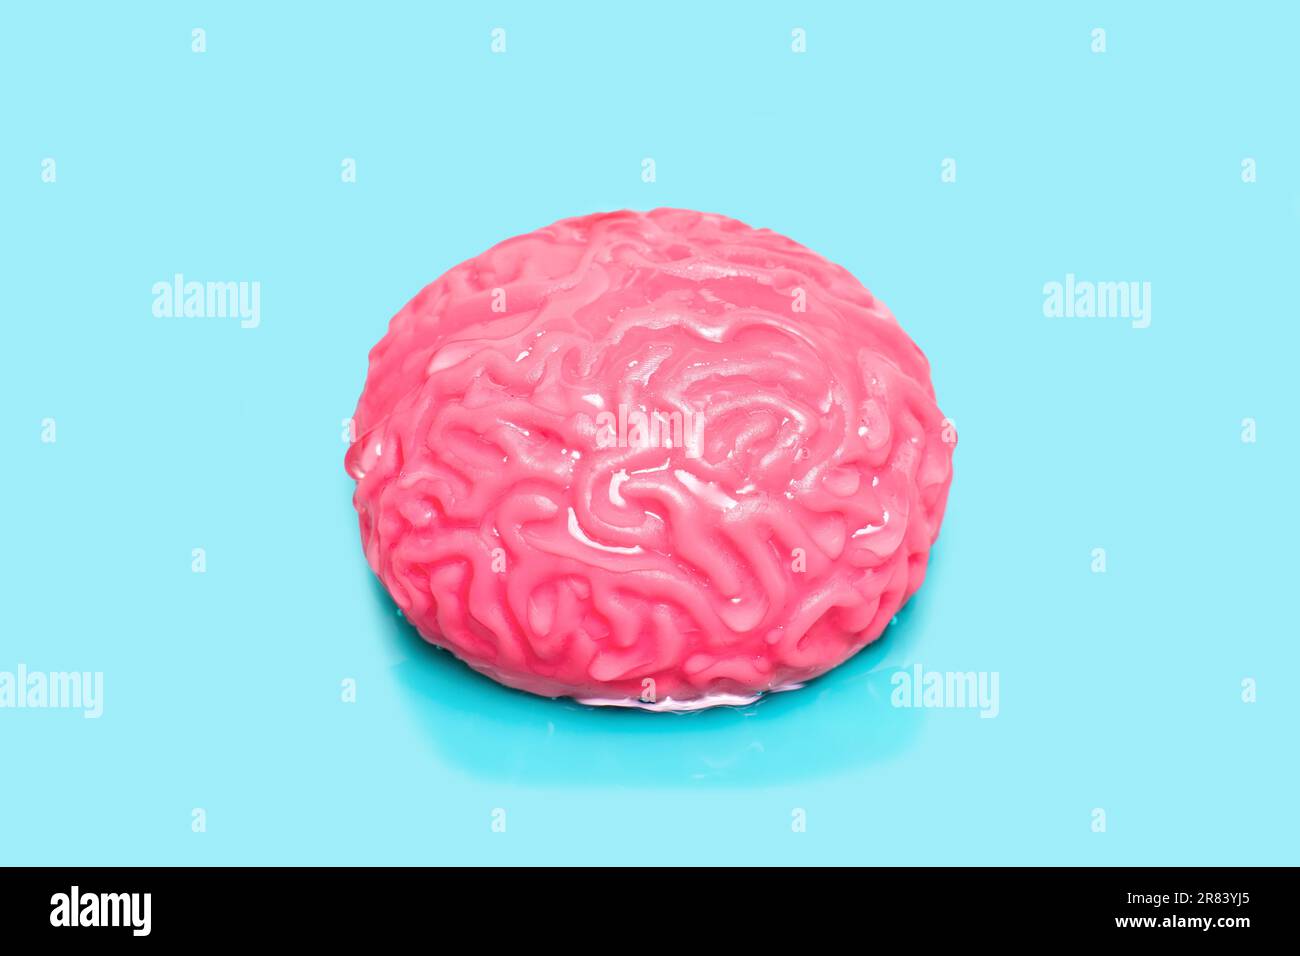 Das nasse, gelee-ähnliche Modell des menschlichen Gehirns ruht sanft auf einem ruhigen blauen Hintergrund. Kreatives mentelles Reinigungs- und Aufklärungskonzept. Stockfoto